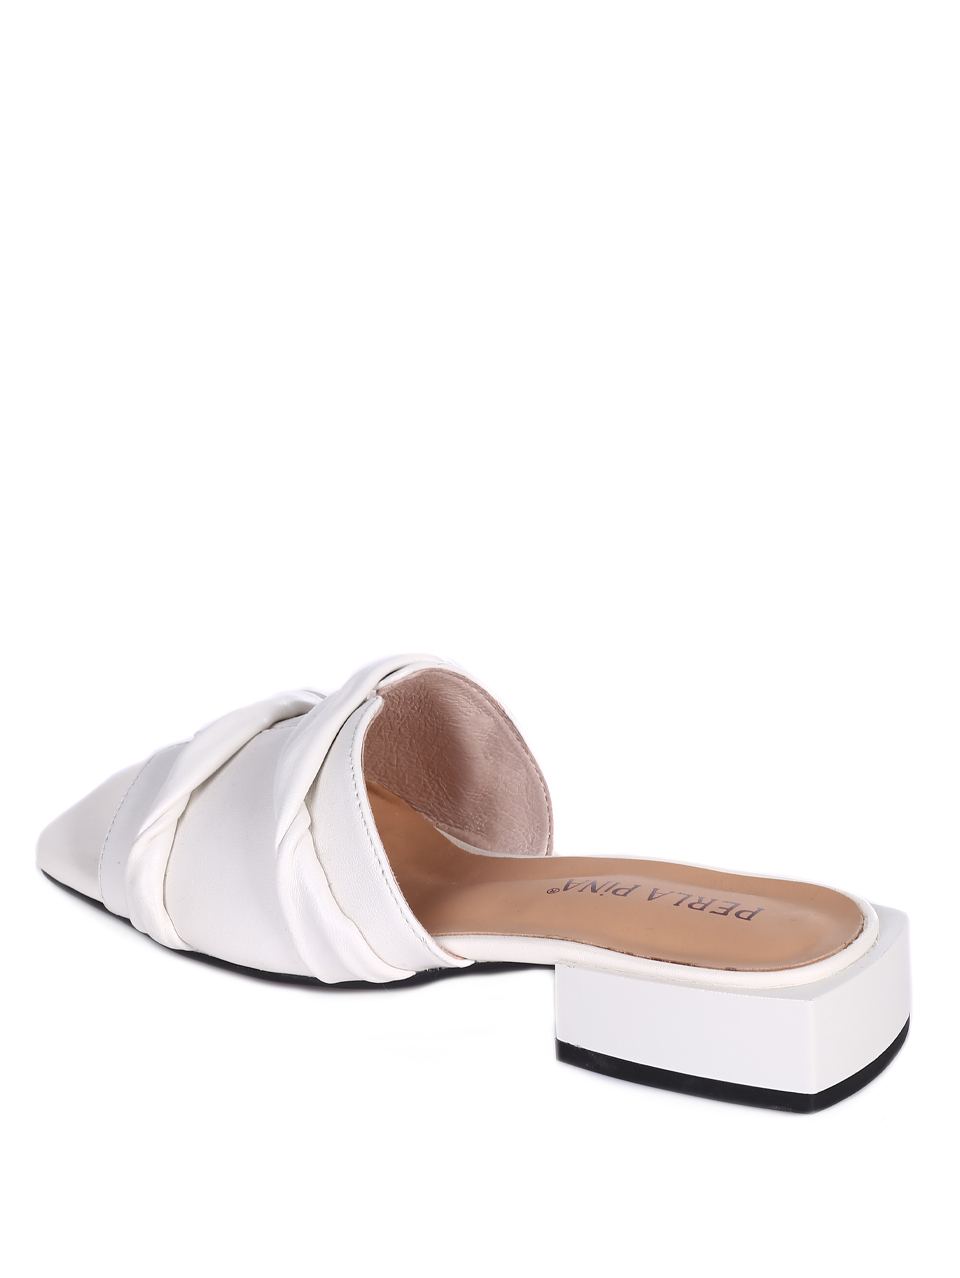 Eжедневни дамски чехли от естествена кожа  в бяло T27-2 white S